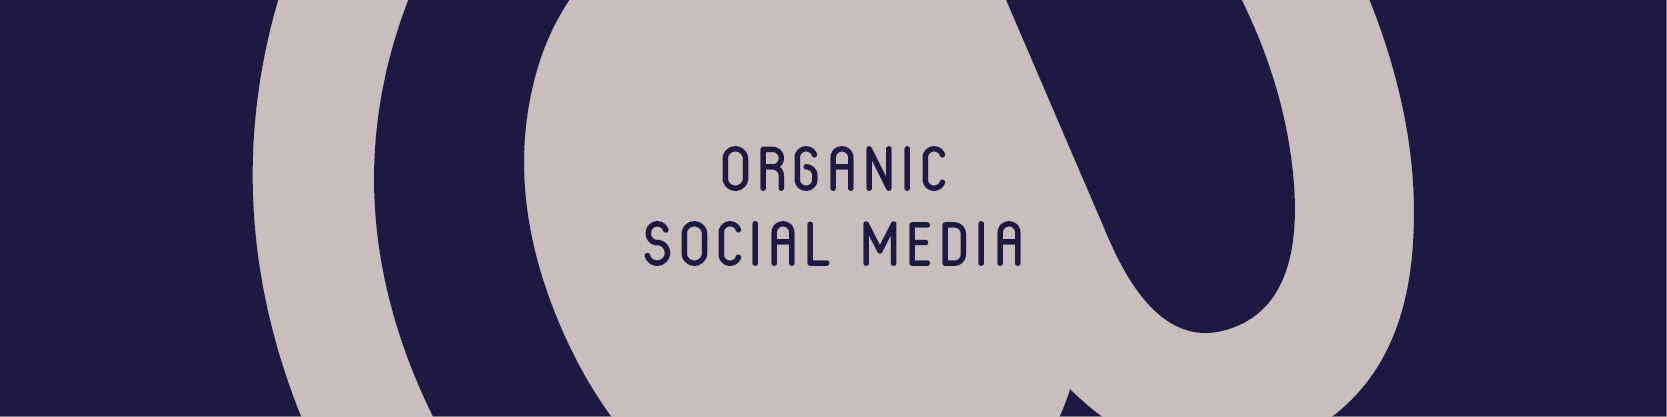 Organic Social Media - Allera Marketing